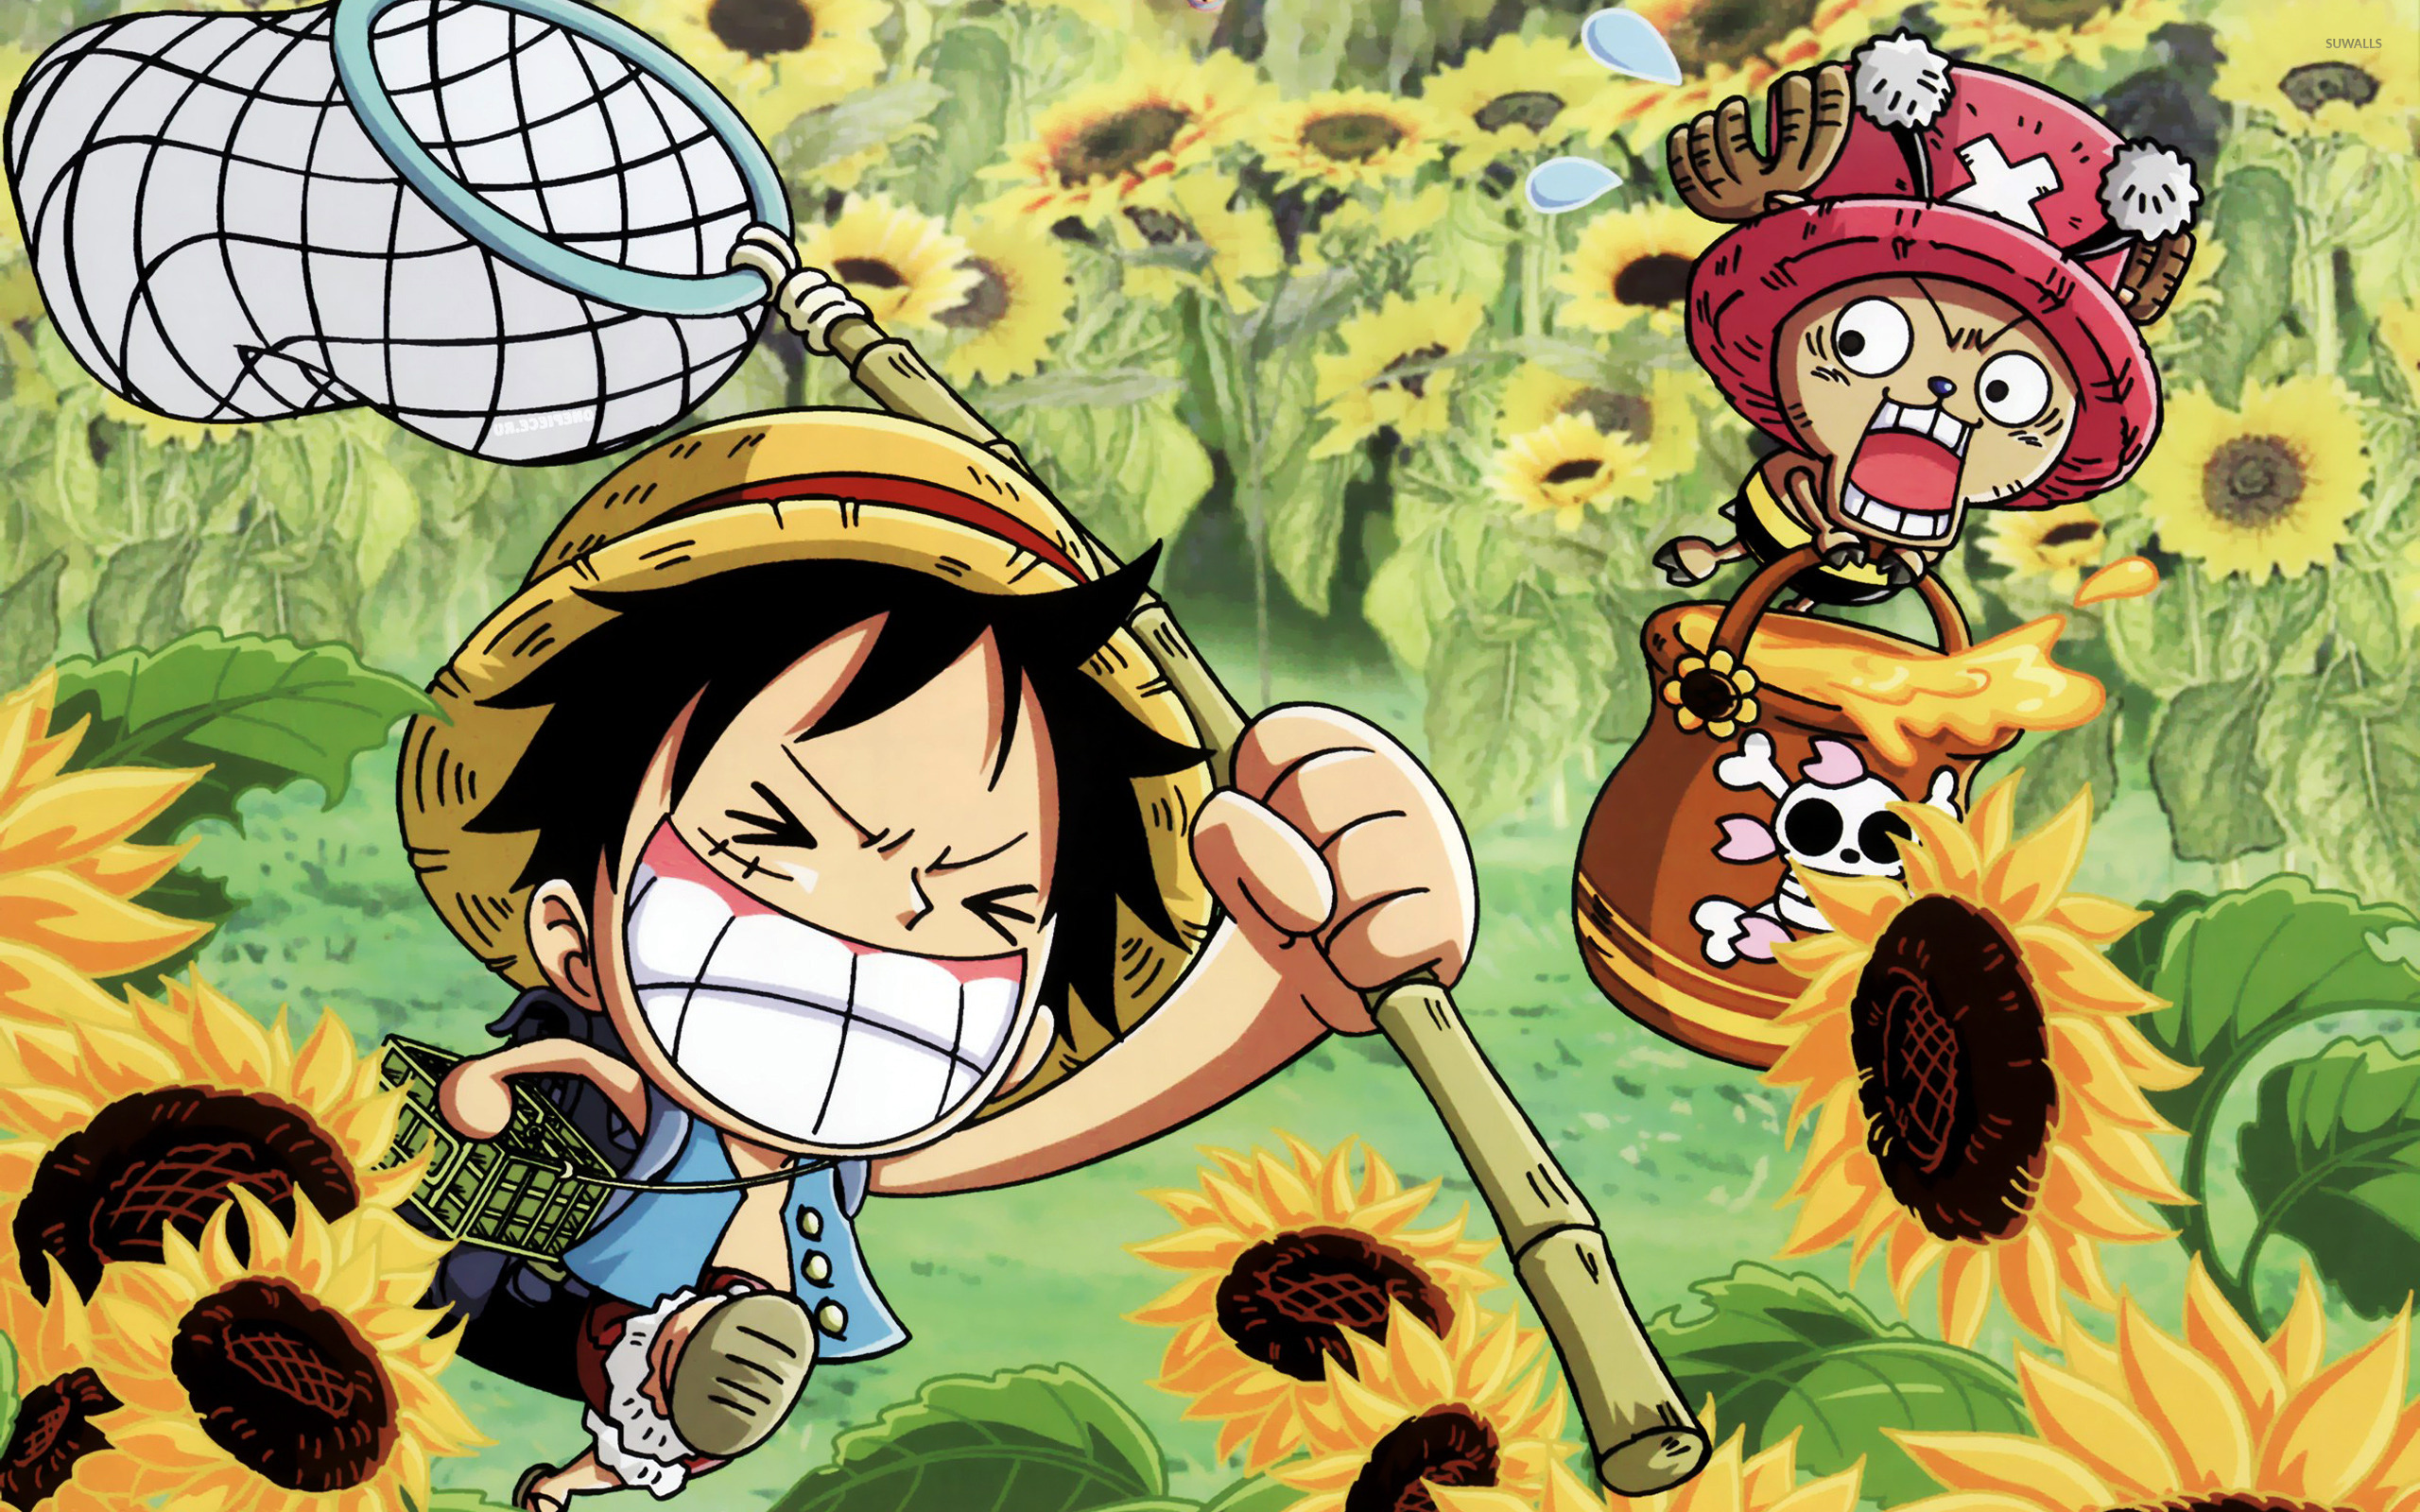 Khám phá thế giới đầy mộng mơ của One Piece với ảnh nền độc đáo! Từ những hòn đảo kì lạ đến những tay kiếm mạnh mẽ, hình nền One Piece chắc chắn sẽ khiến bạn thích thú và khám phá càng nhiều hơn về thế giới này.